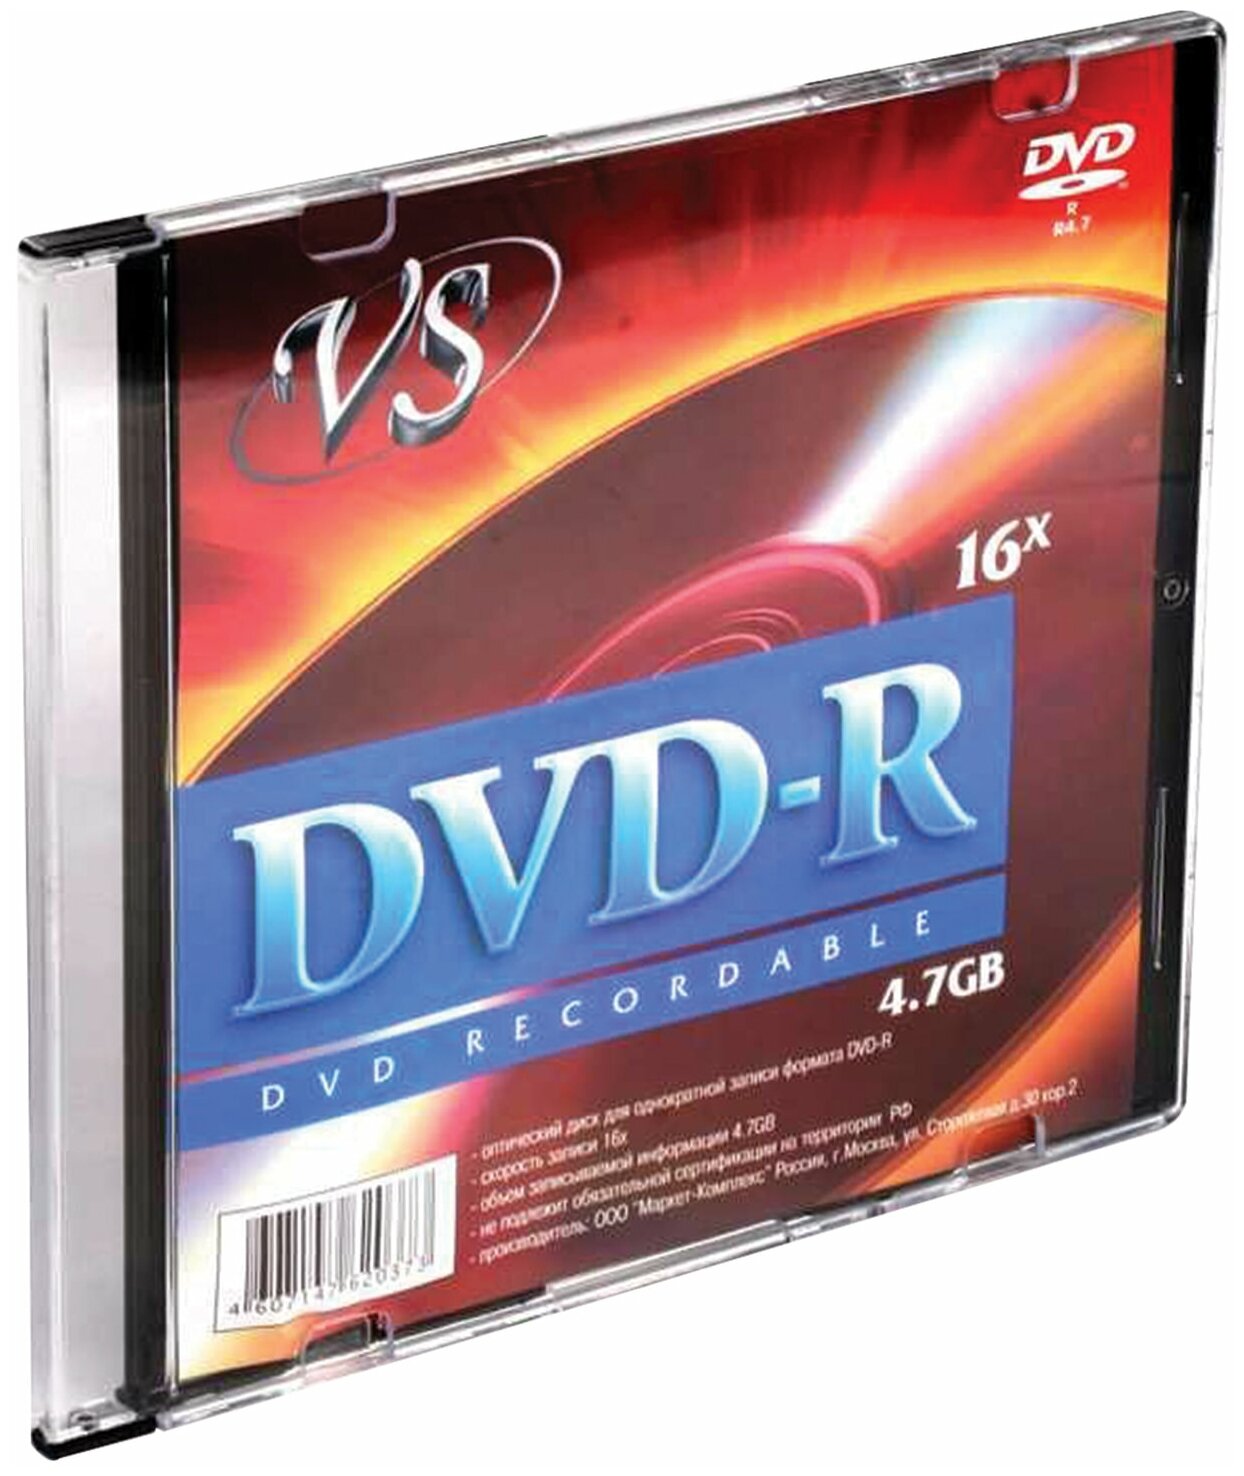 Диск DVD-R VS, 4,7 Gb, 16x, Slim Case (1 штука), VSDVDRSL01 /Квант продажи 5 ед./